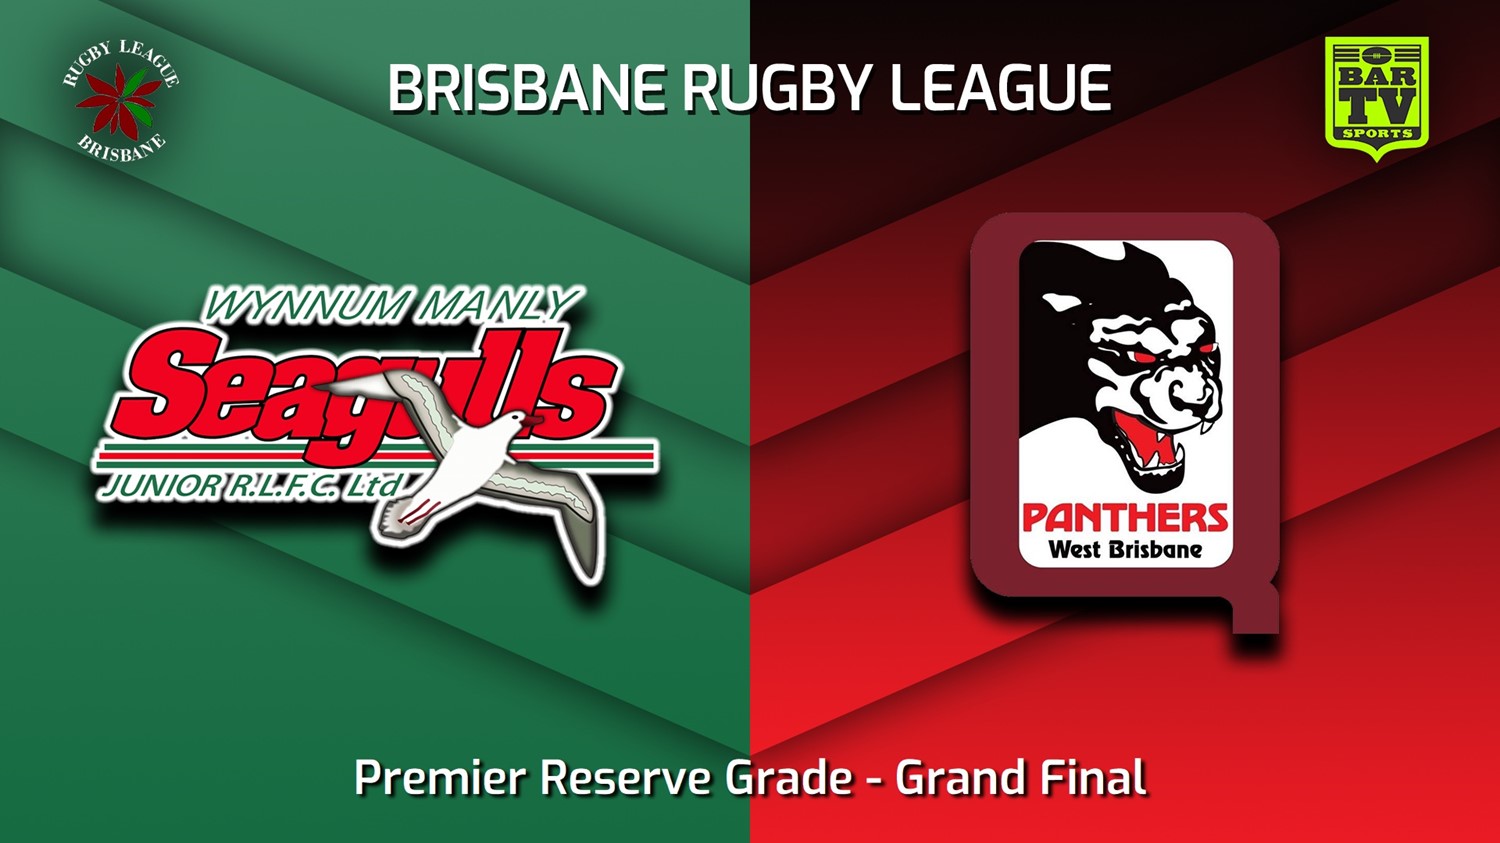 230909-BRL Grand Final - Premier Reserve Grade - Wynnum Manly Seagulls Juniors v West Brisbane Panthers Slate Image